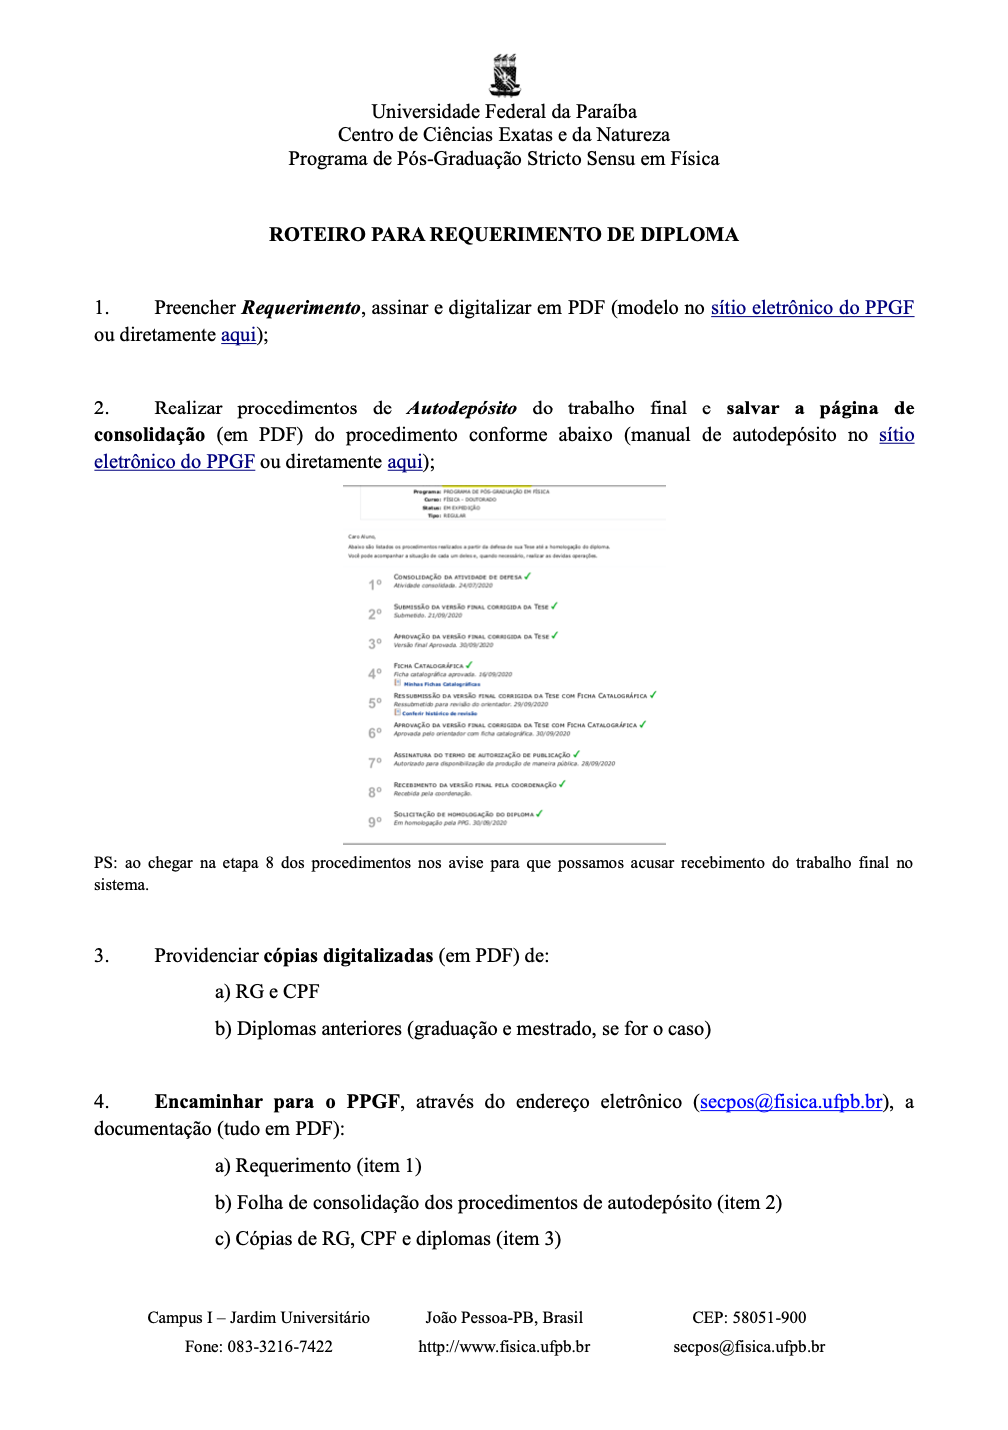 ppgf_roteiro_diploma.png